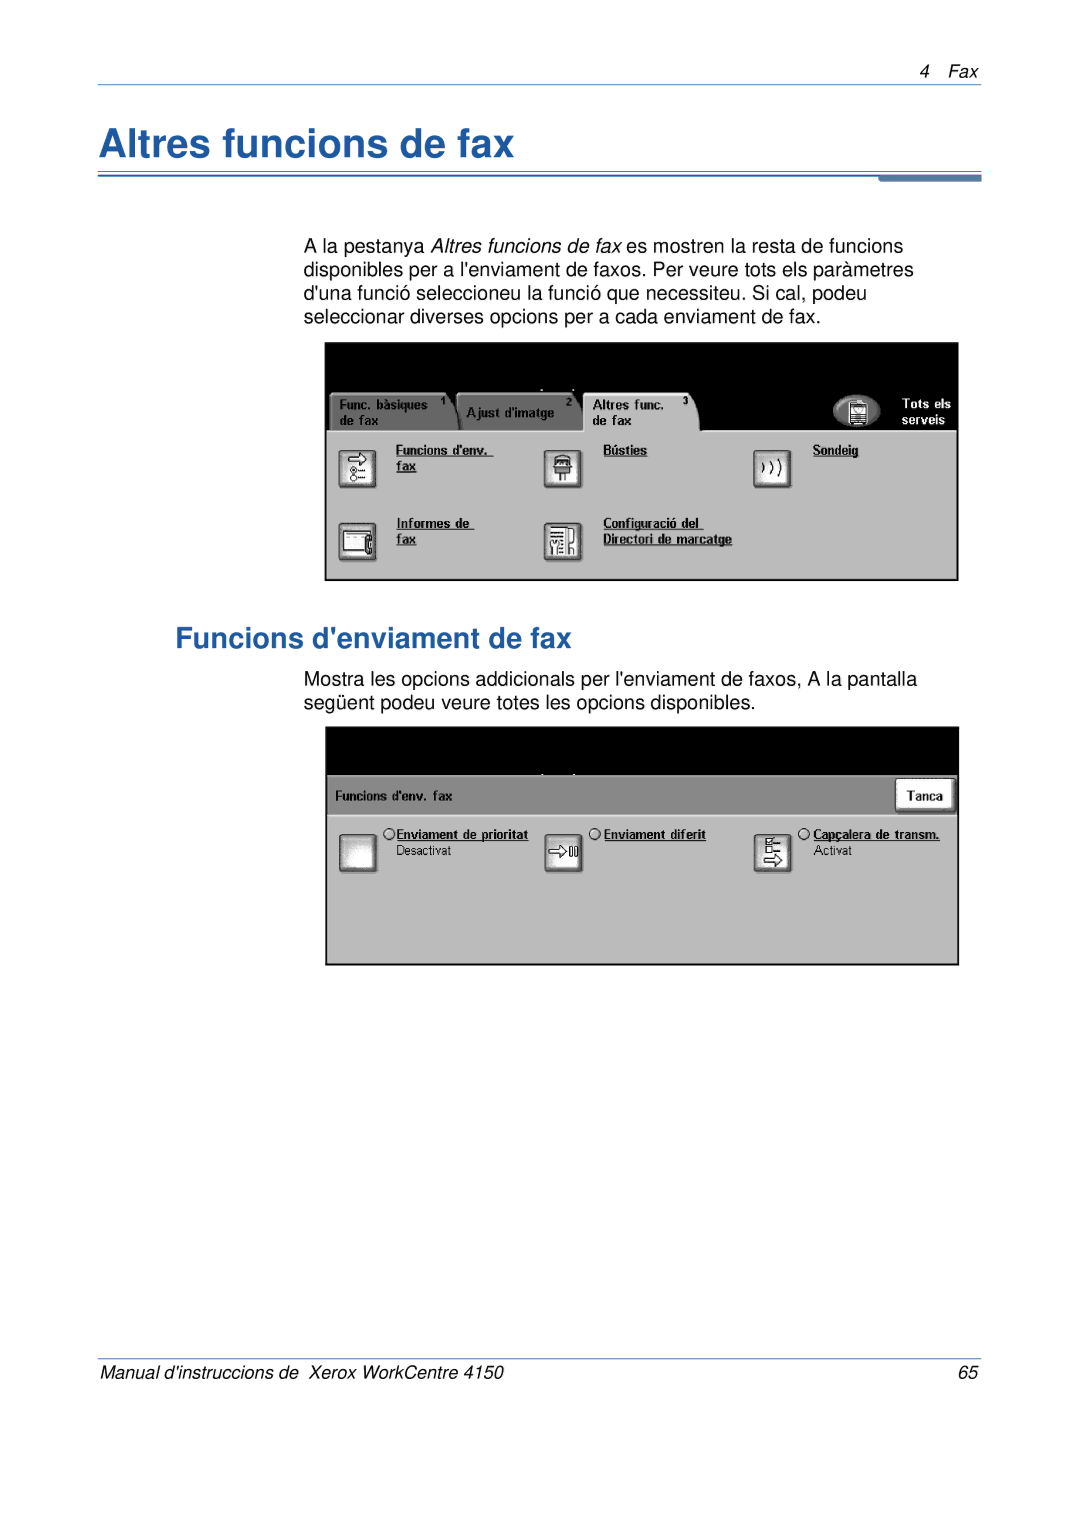 Xerox 5.0 24.03.06 manual Altres funcions de fax, Funcions denviament de fax 